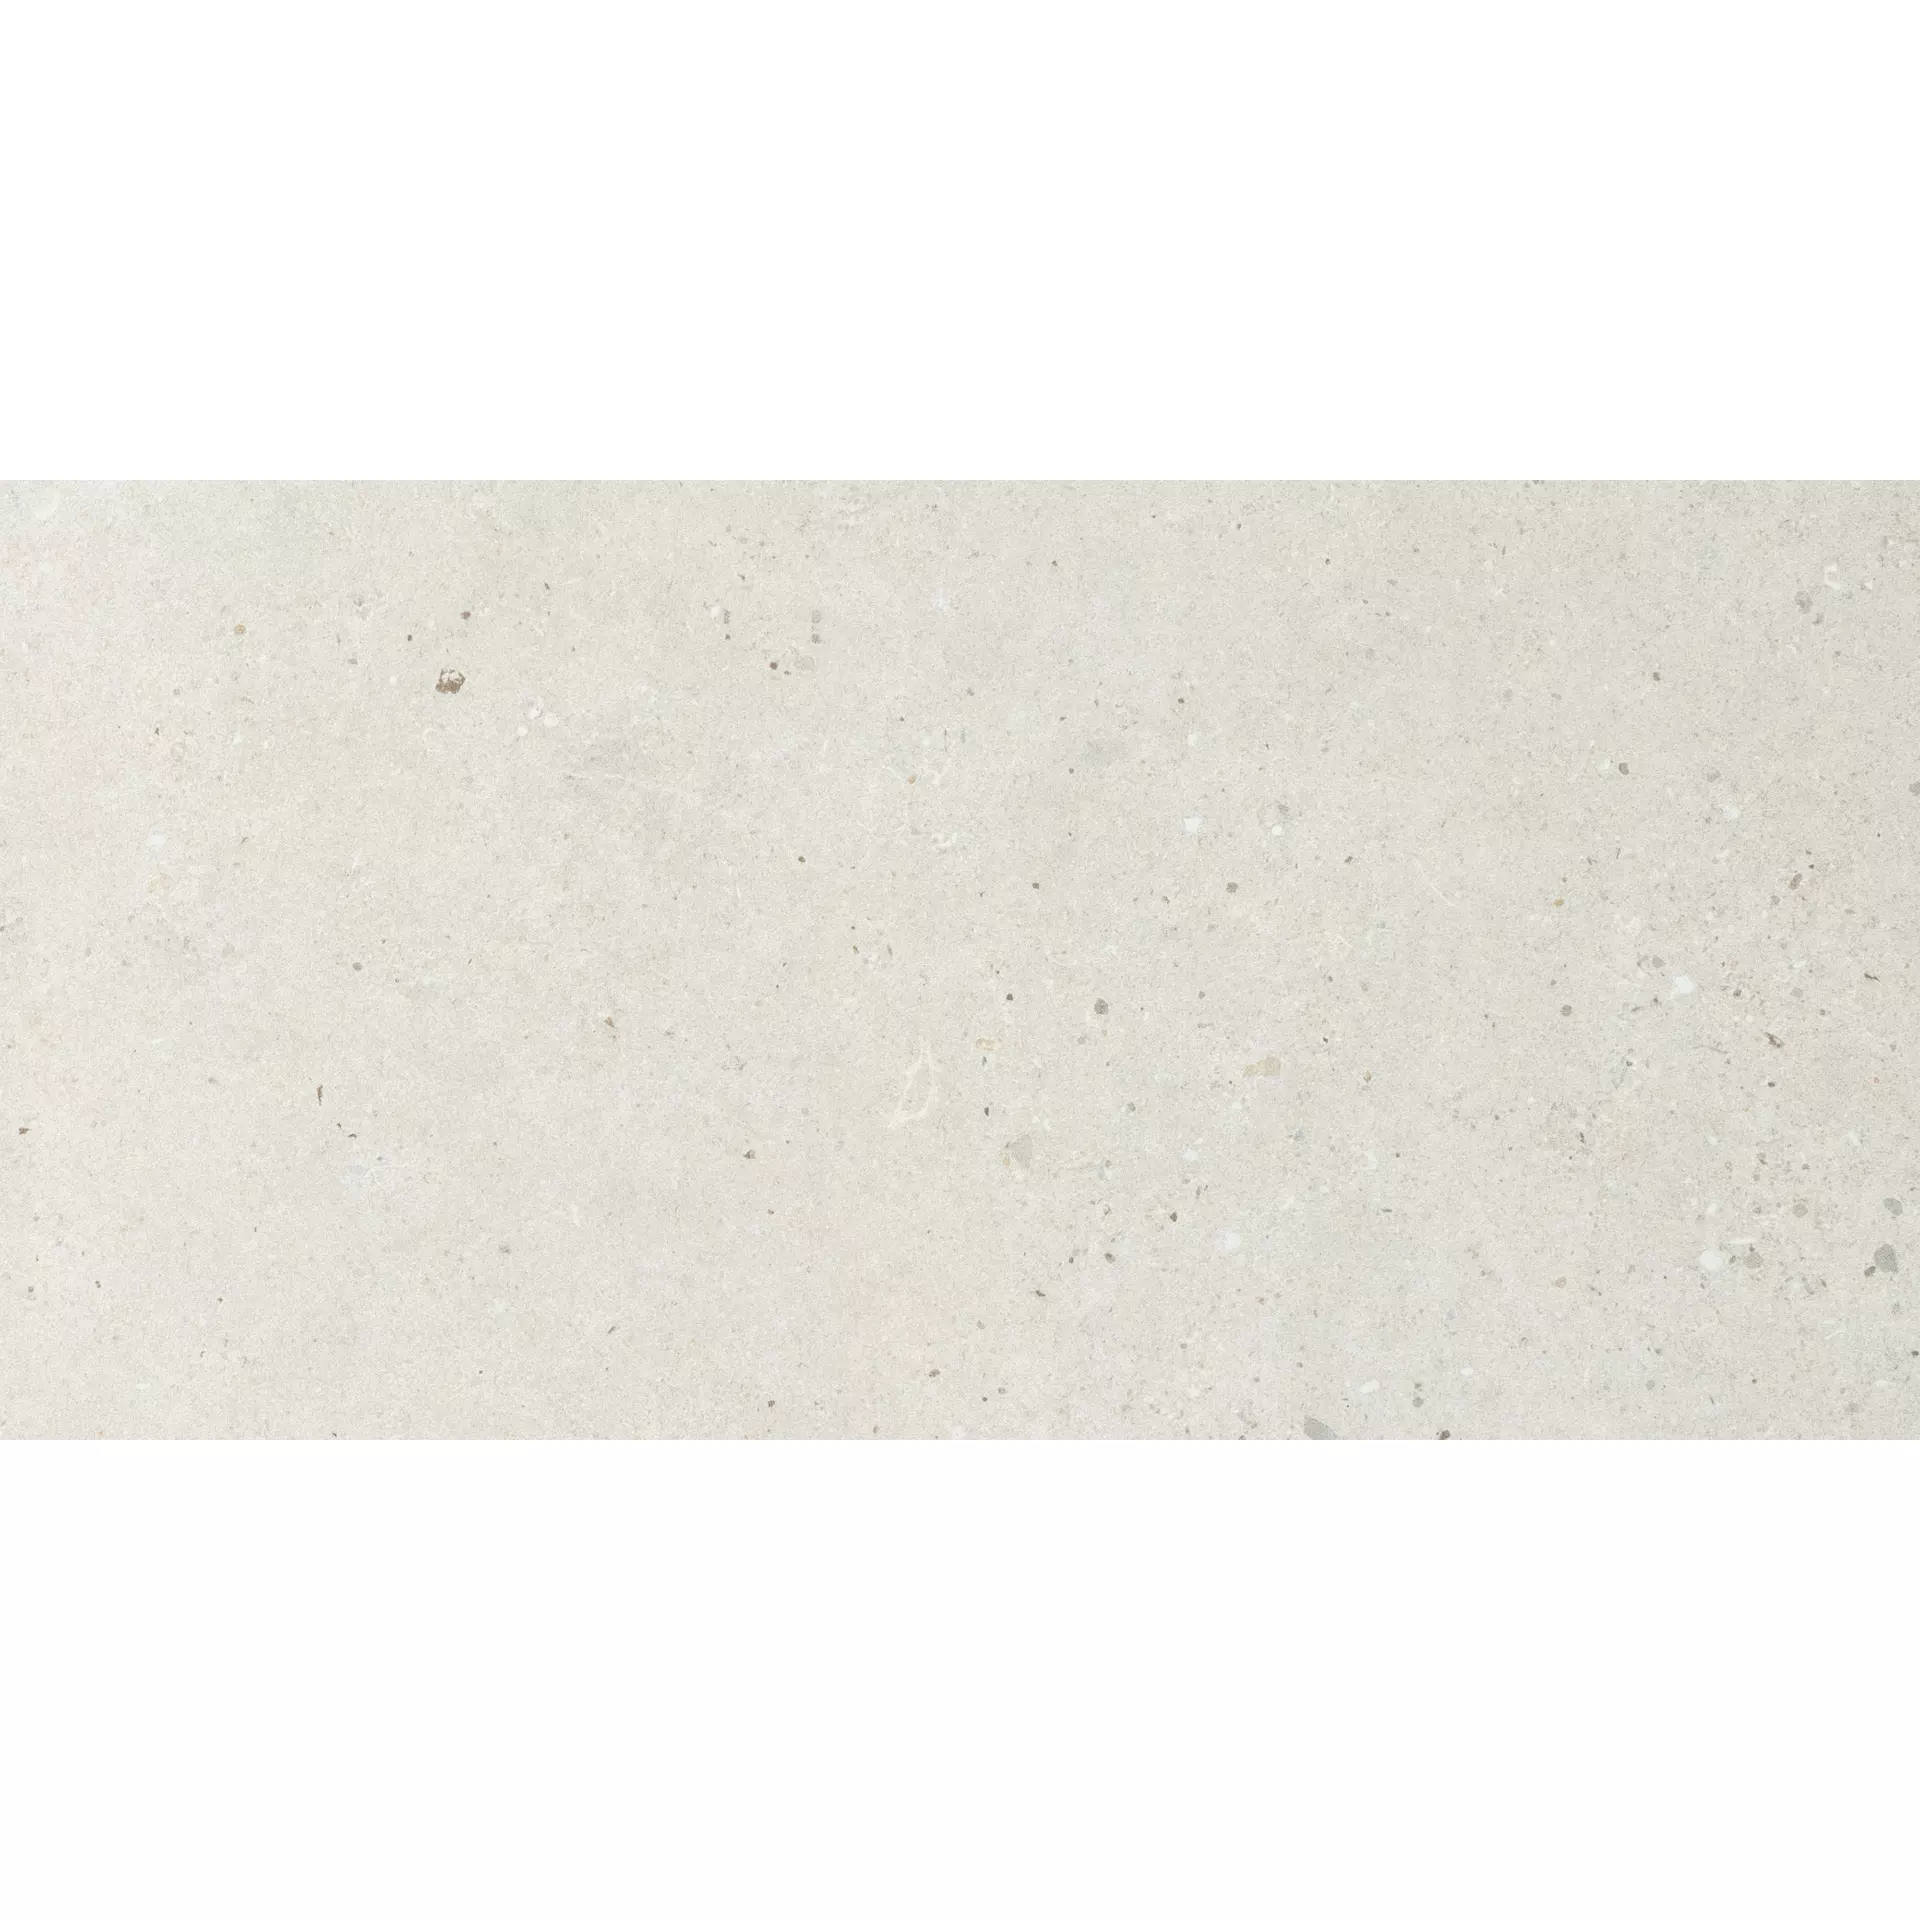 Italgraniti Silver Grain White Naturale – Matt SI01BA 60x120cm rectified